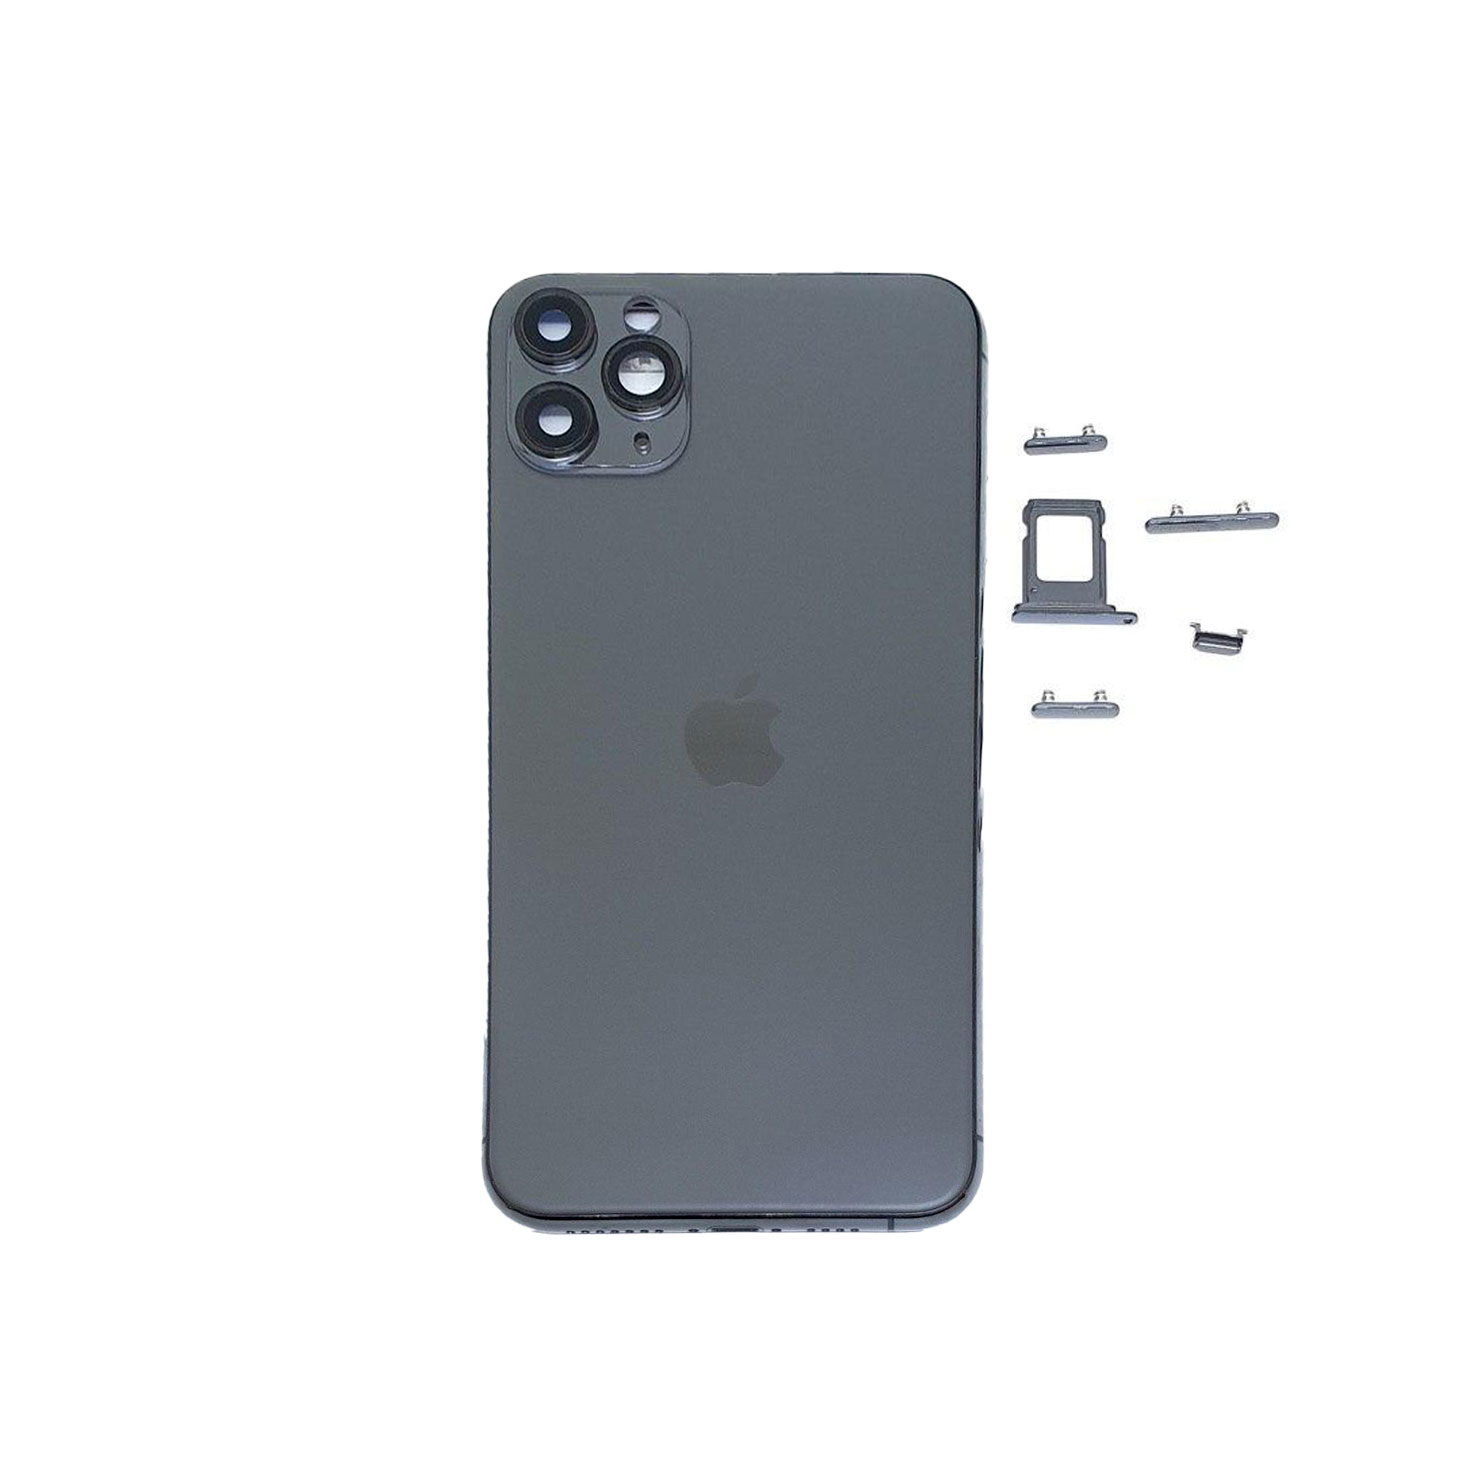 iPhone 11 Pro Max sẽ sớm mở ra trào lưu điện thoại màu xanh rêu?